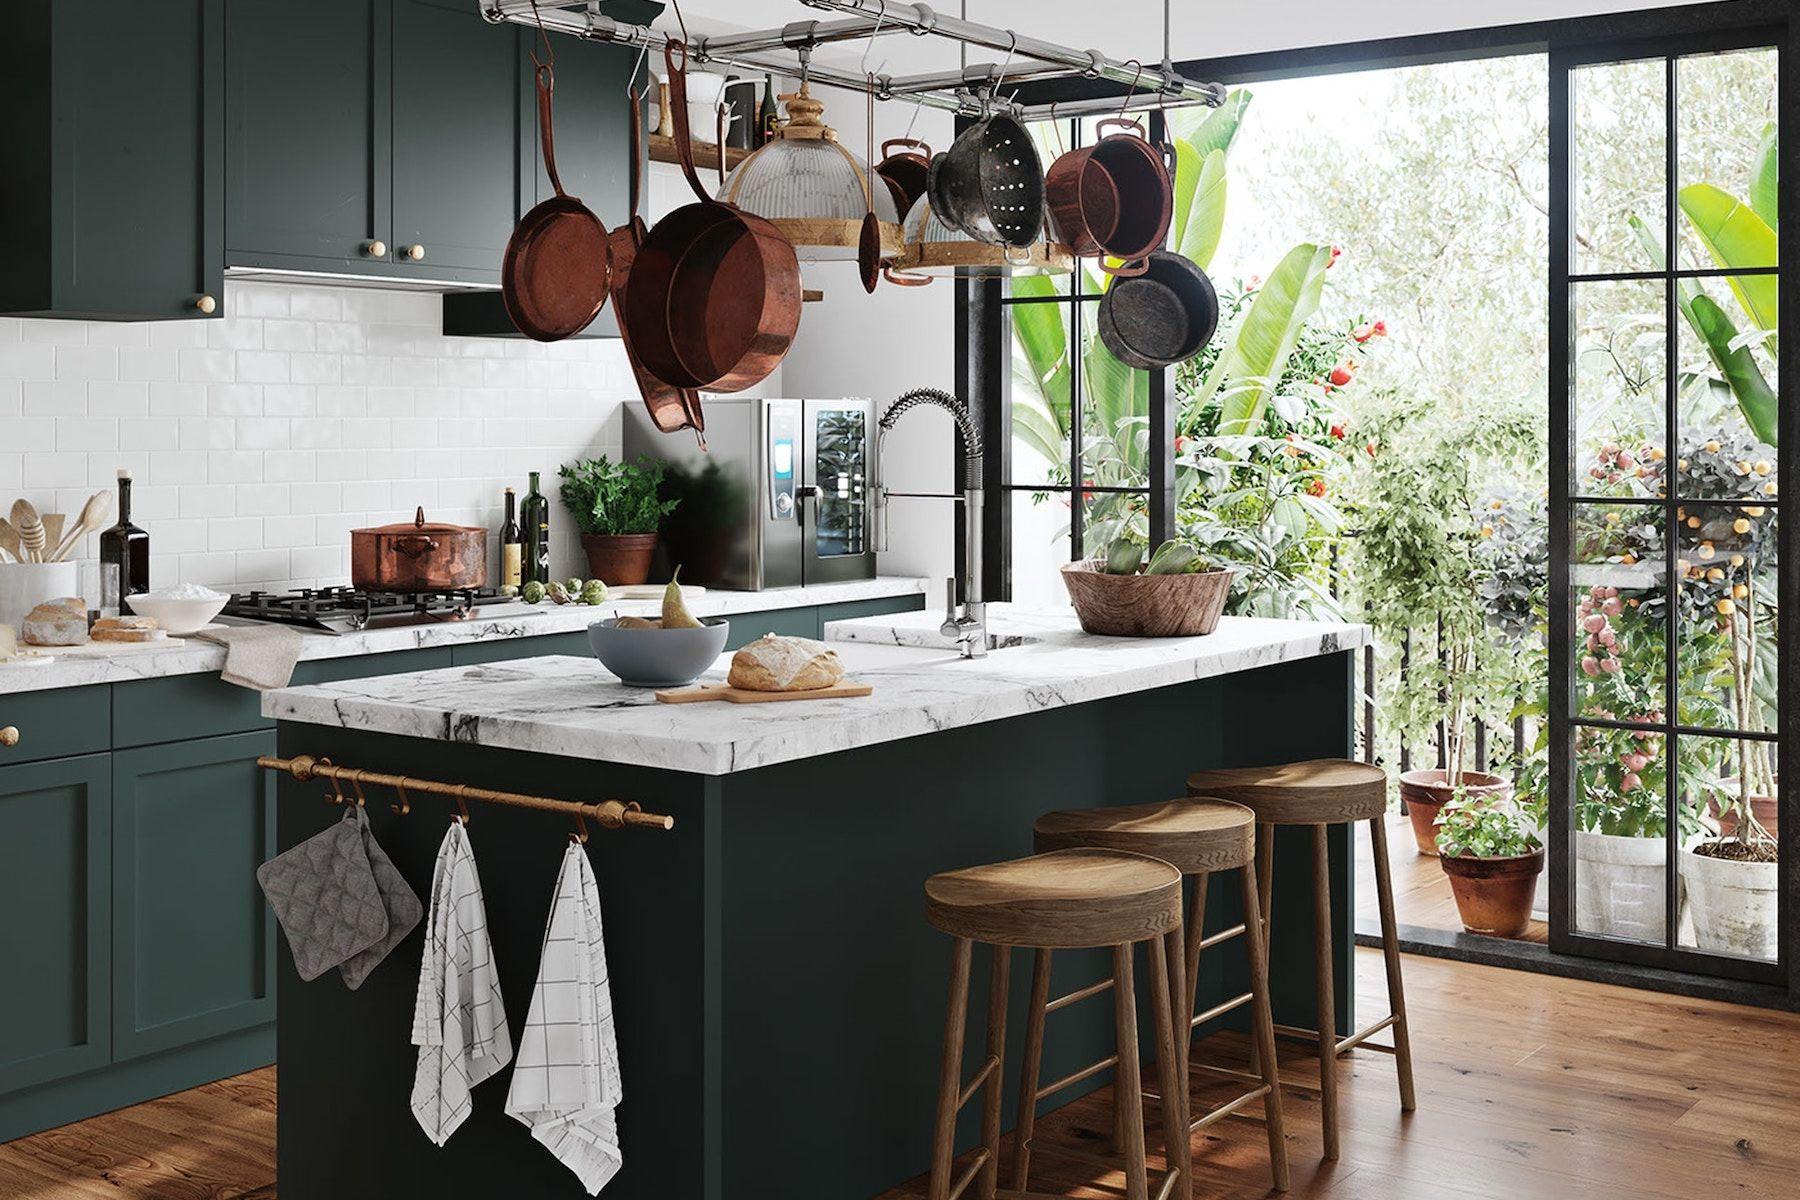 Mörk grönt kök med marmor, kastruller och köksredskap hänger från taket